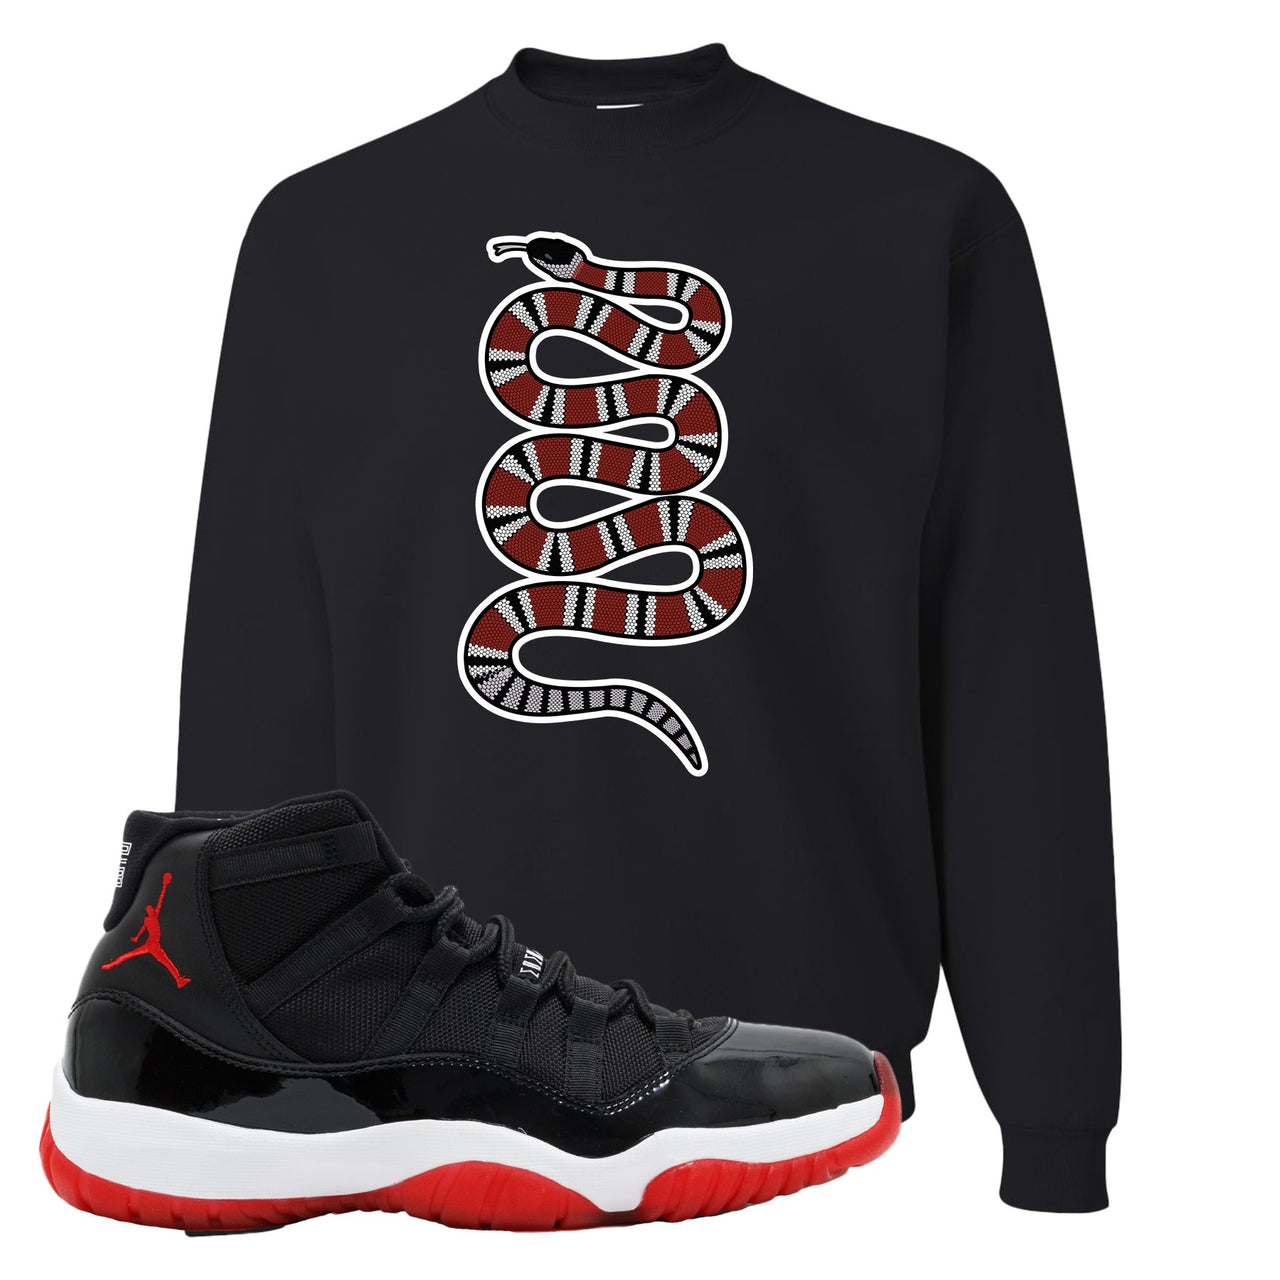 Jordan 11 Bred Coiled Snake Black Sneaker Hook Up Crewneck Sweatshirt